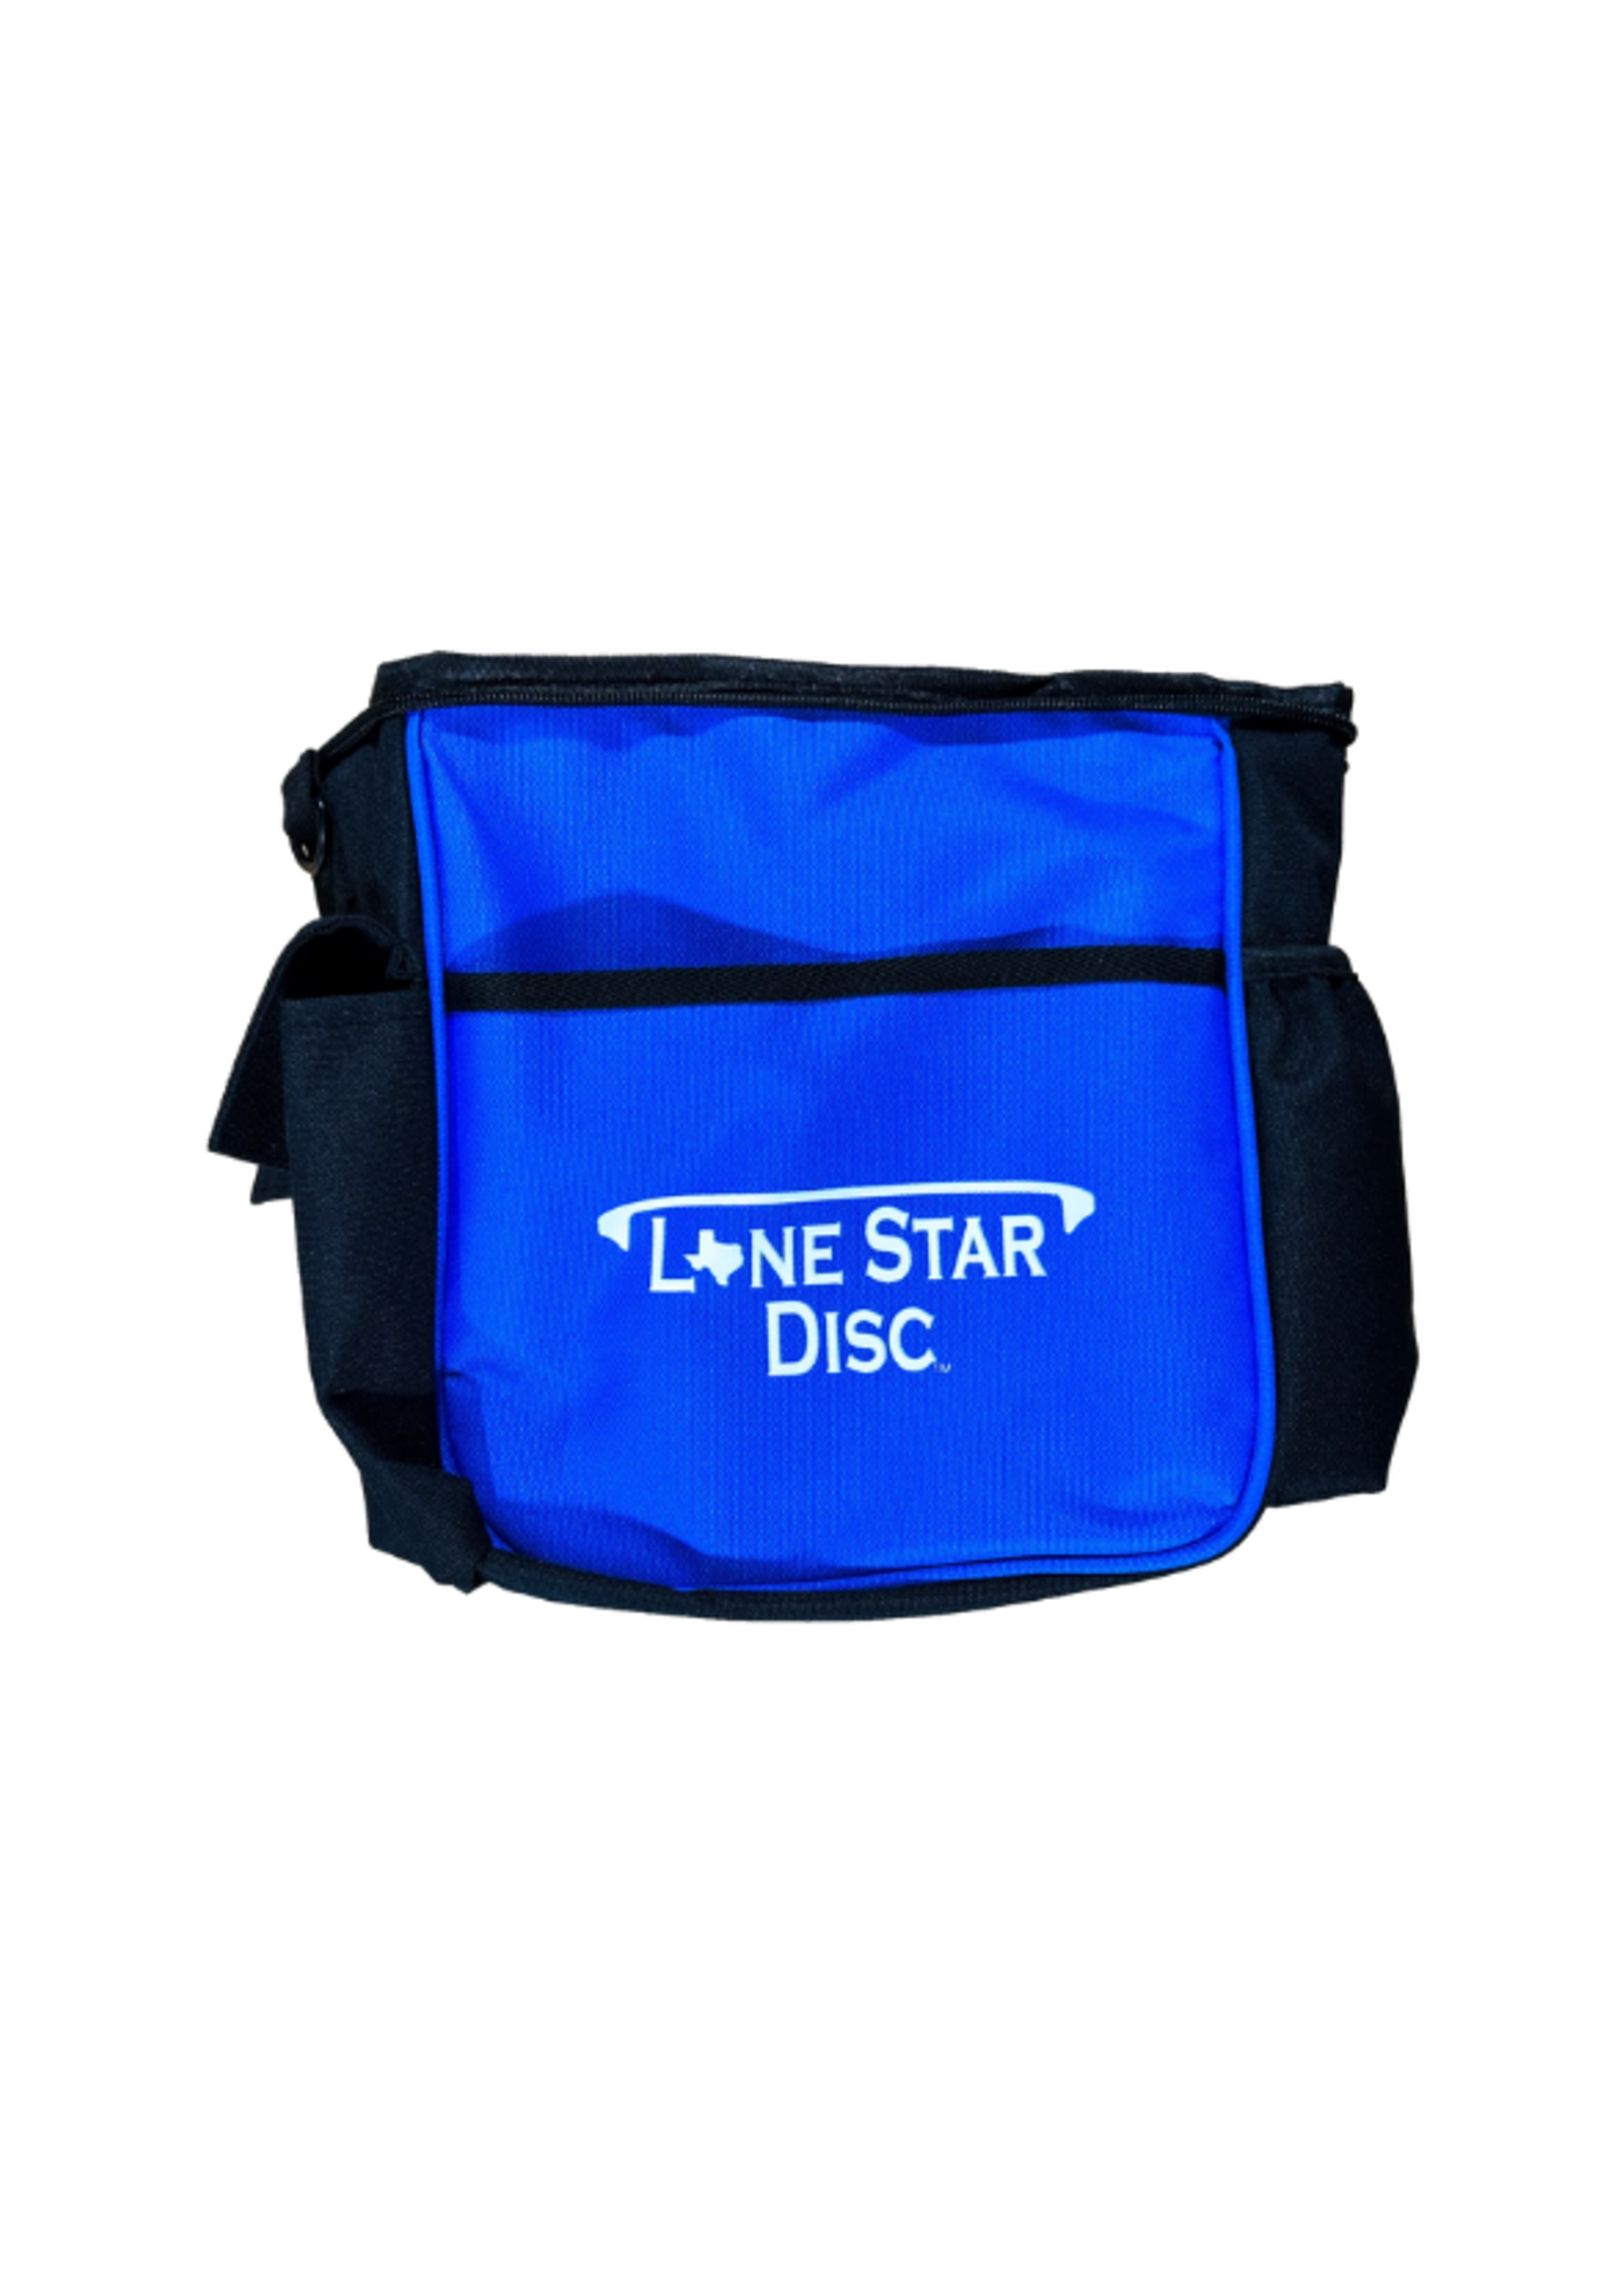 Lonestar Disc LONE STAR DISC SHOULDER BAG